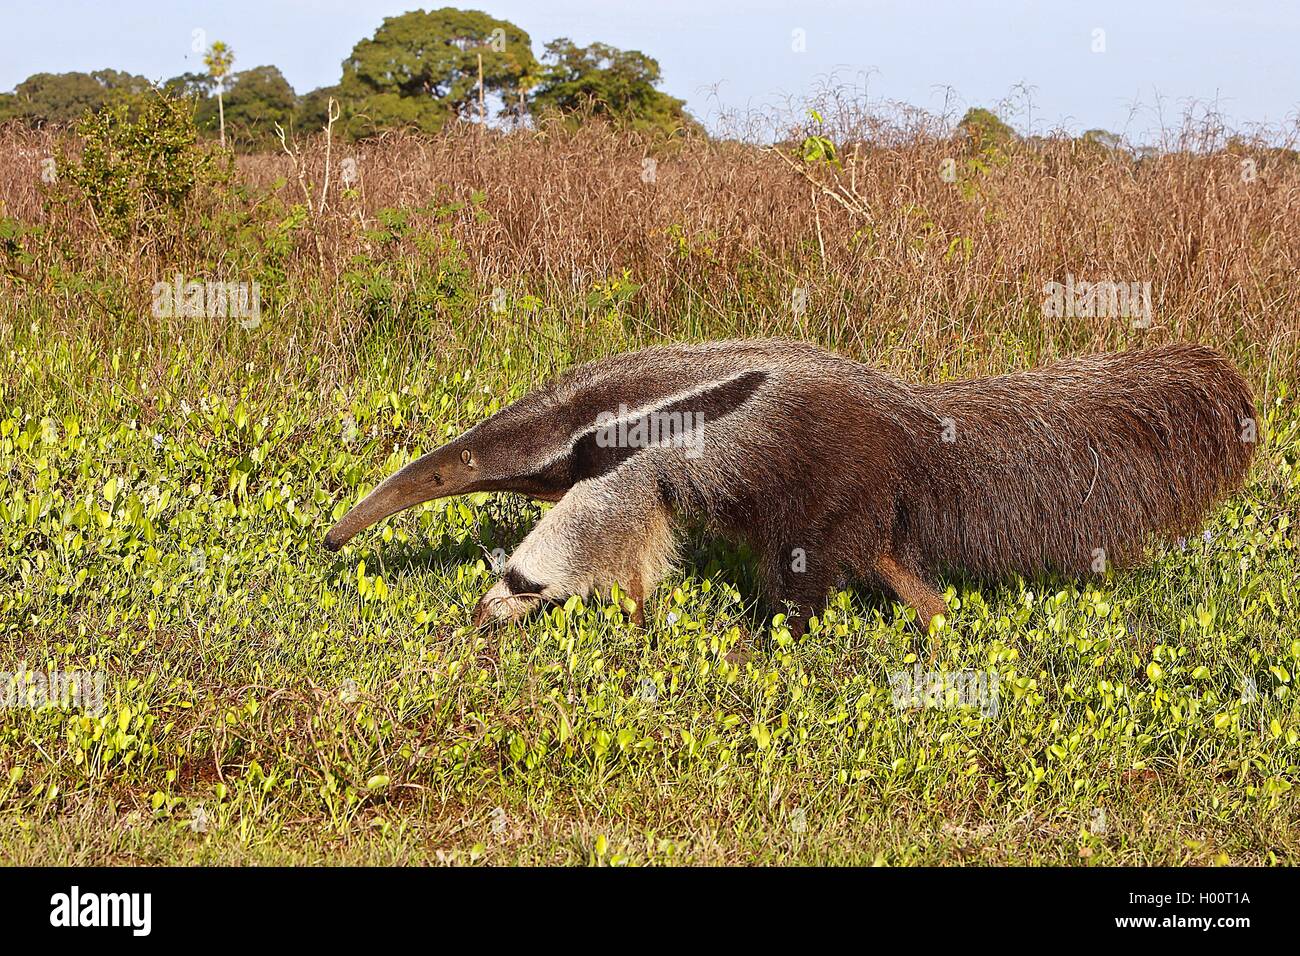 Oso hormiguero gigante (Myrmecophaga tridactyla), en su hábitat, Costa Rica Foto de stock